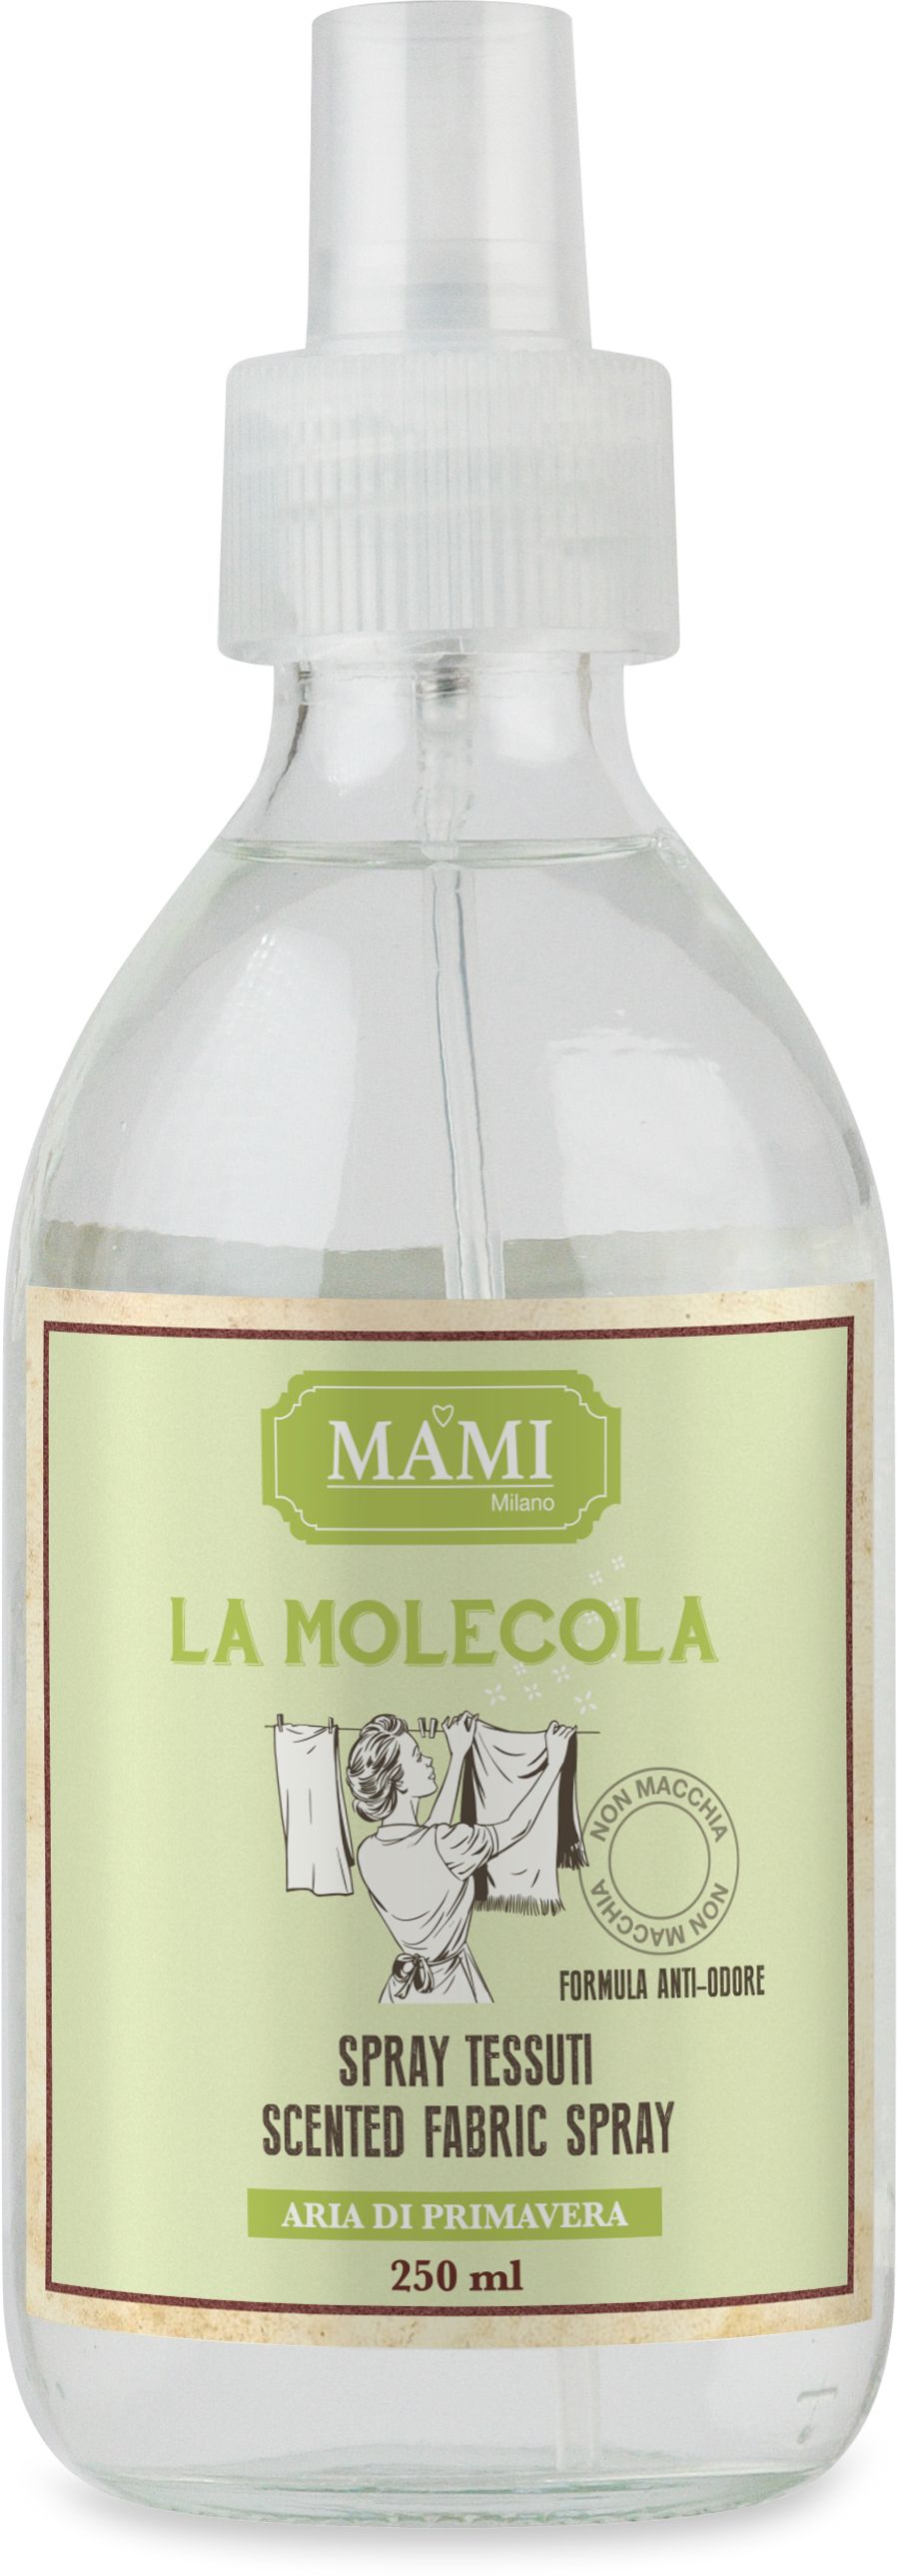 Molecola Spray Antiodore 250 Ml - Aria Di Primavera Mami Milano